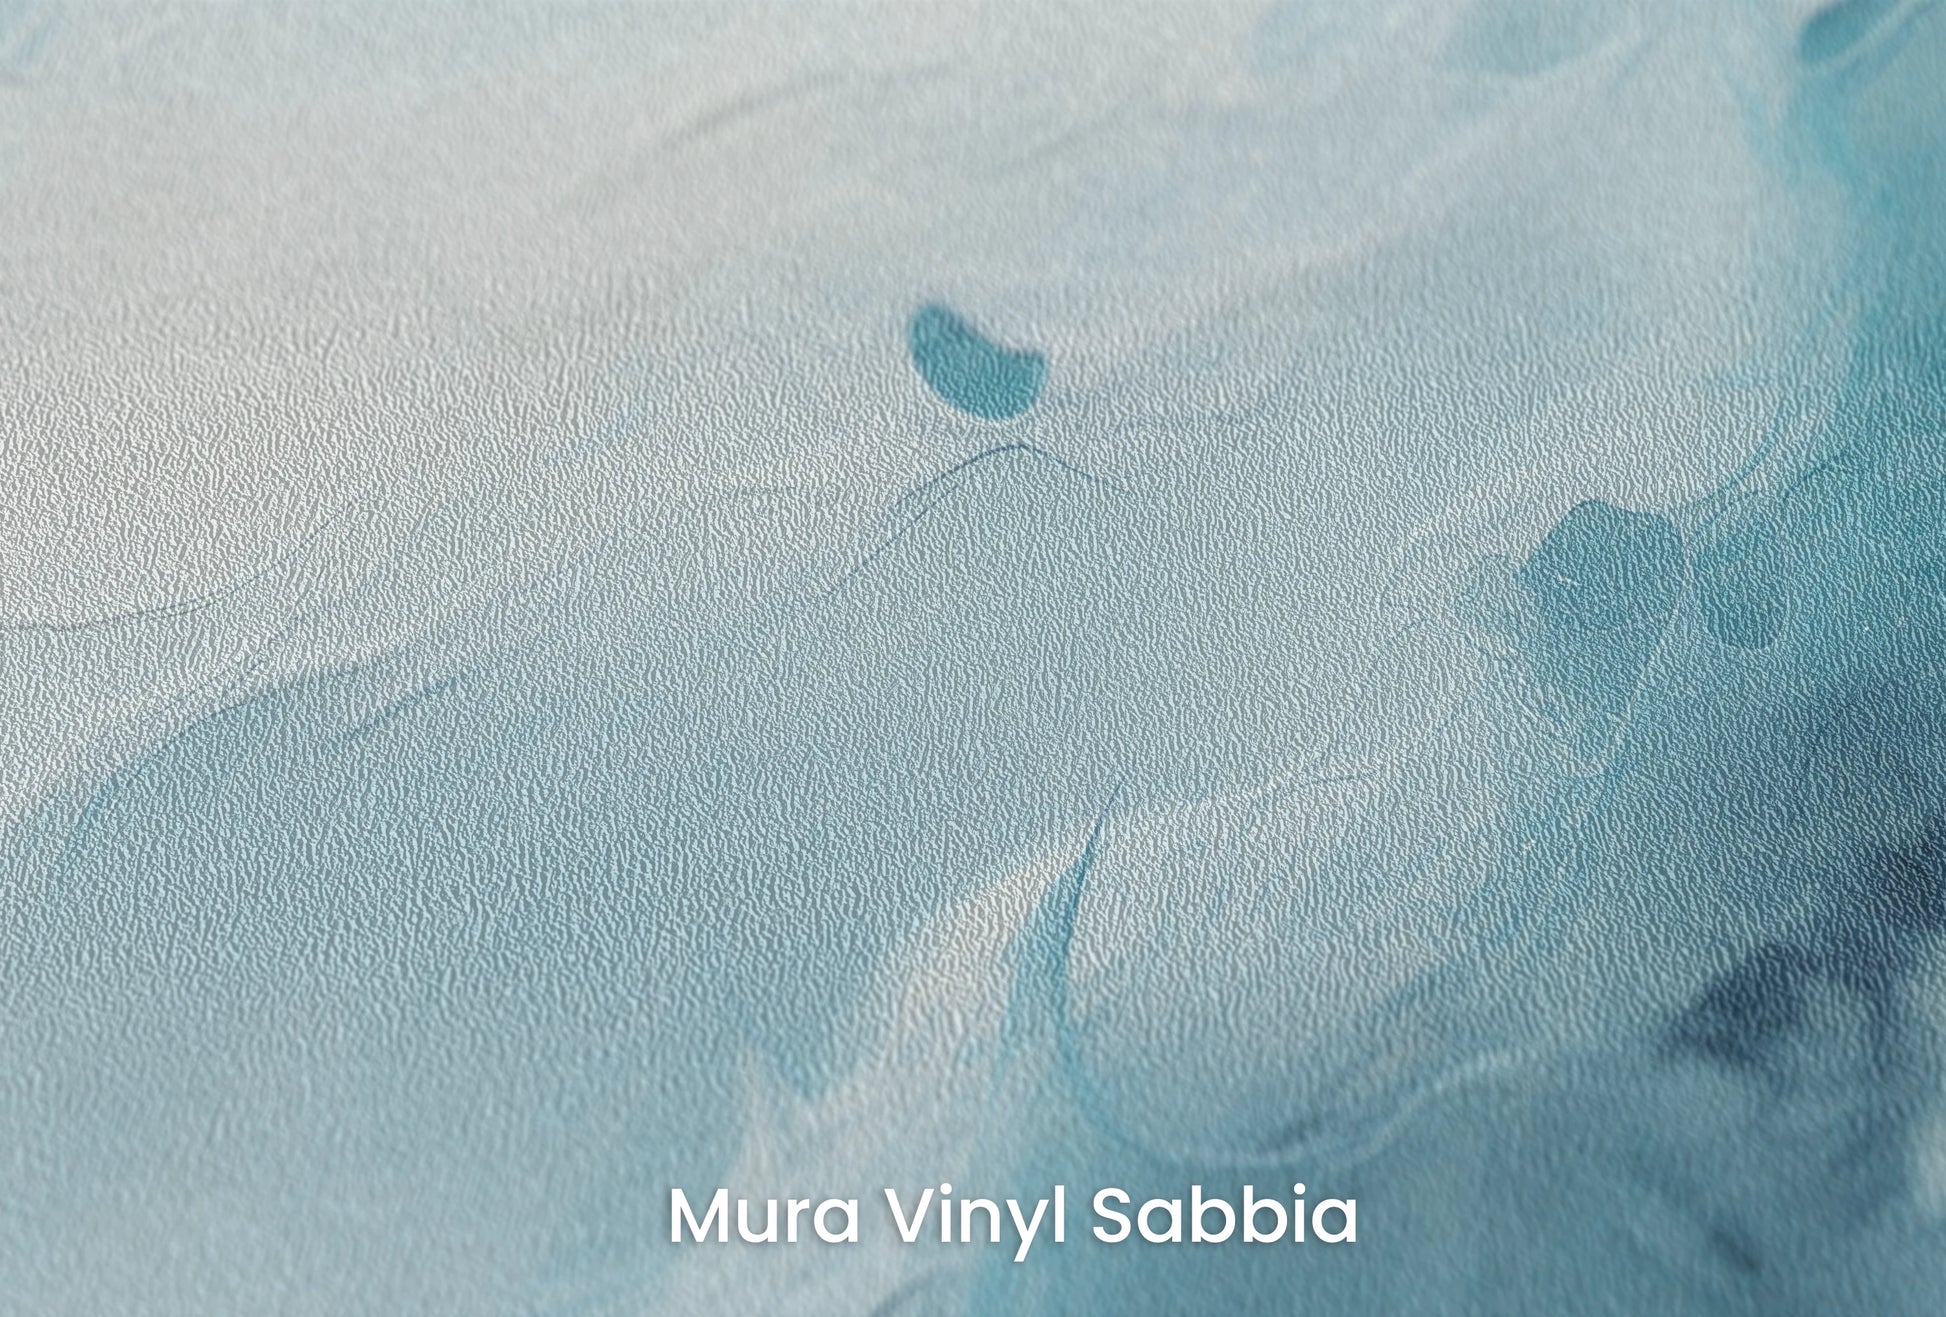 Zbliżenie na artystyczną fototapetę o nazwie Neptune's Whirl na podłożu Mura Vinyl Sabbia struktura grubego ziarna piasku.